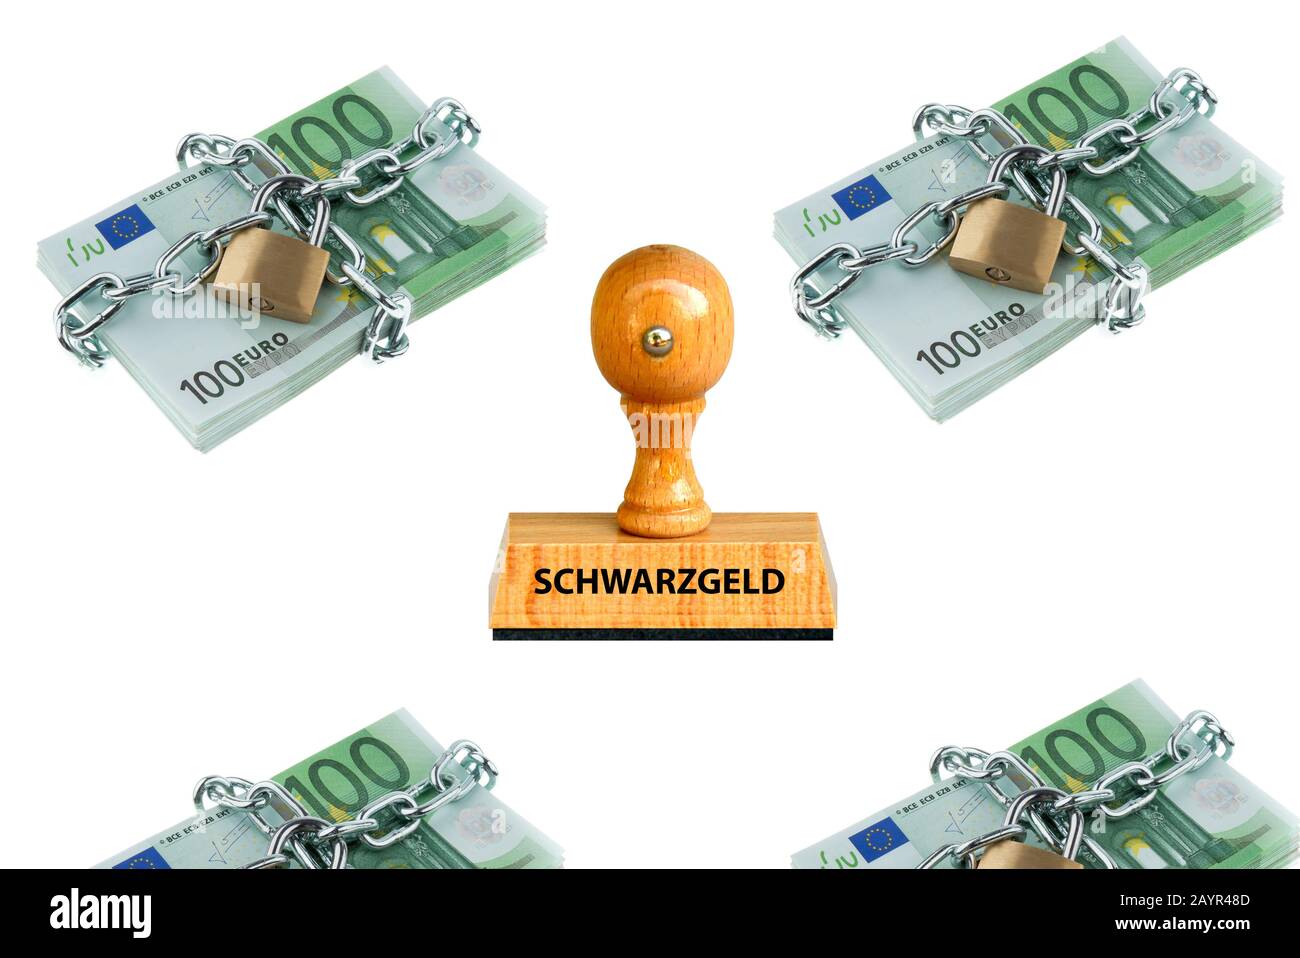 Letras de sellos Schwarzgeld, dinero negro, 100 billetes de euro con cerraduras de cadena en el fondo, Alemania Foto de stock